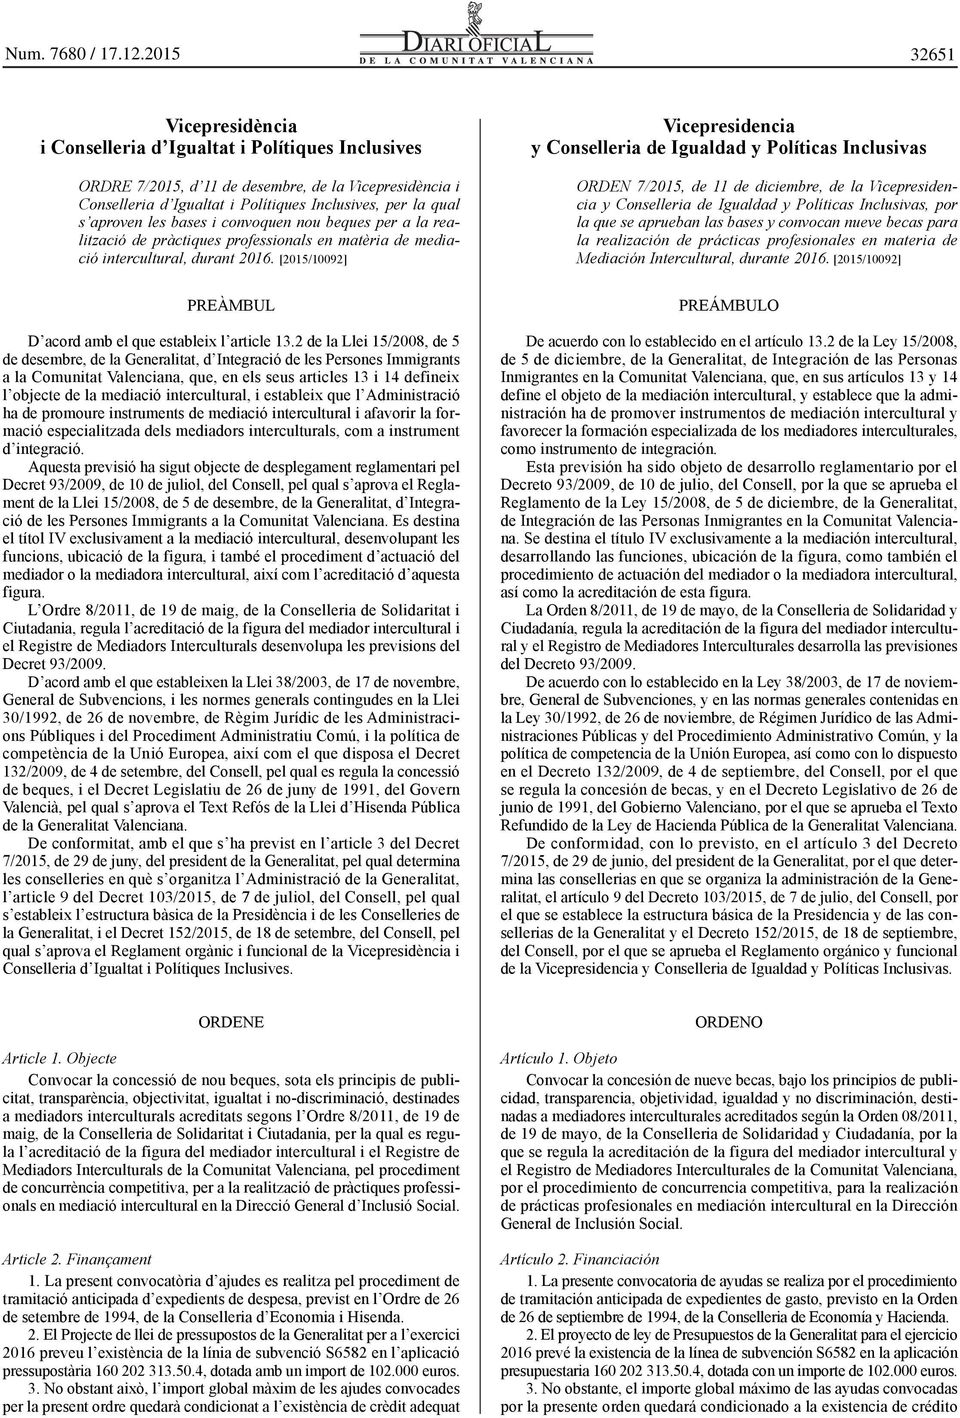 2 de la Llei 15/2008, de 5 de desembre, de la Generalitat, d Integració de les Persones Immigrants a la Comunitat Valenciana, que, en els seus articles 13 i 14 defineix l objecte de la mediació